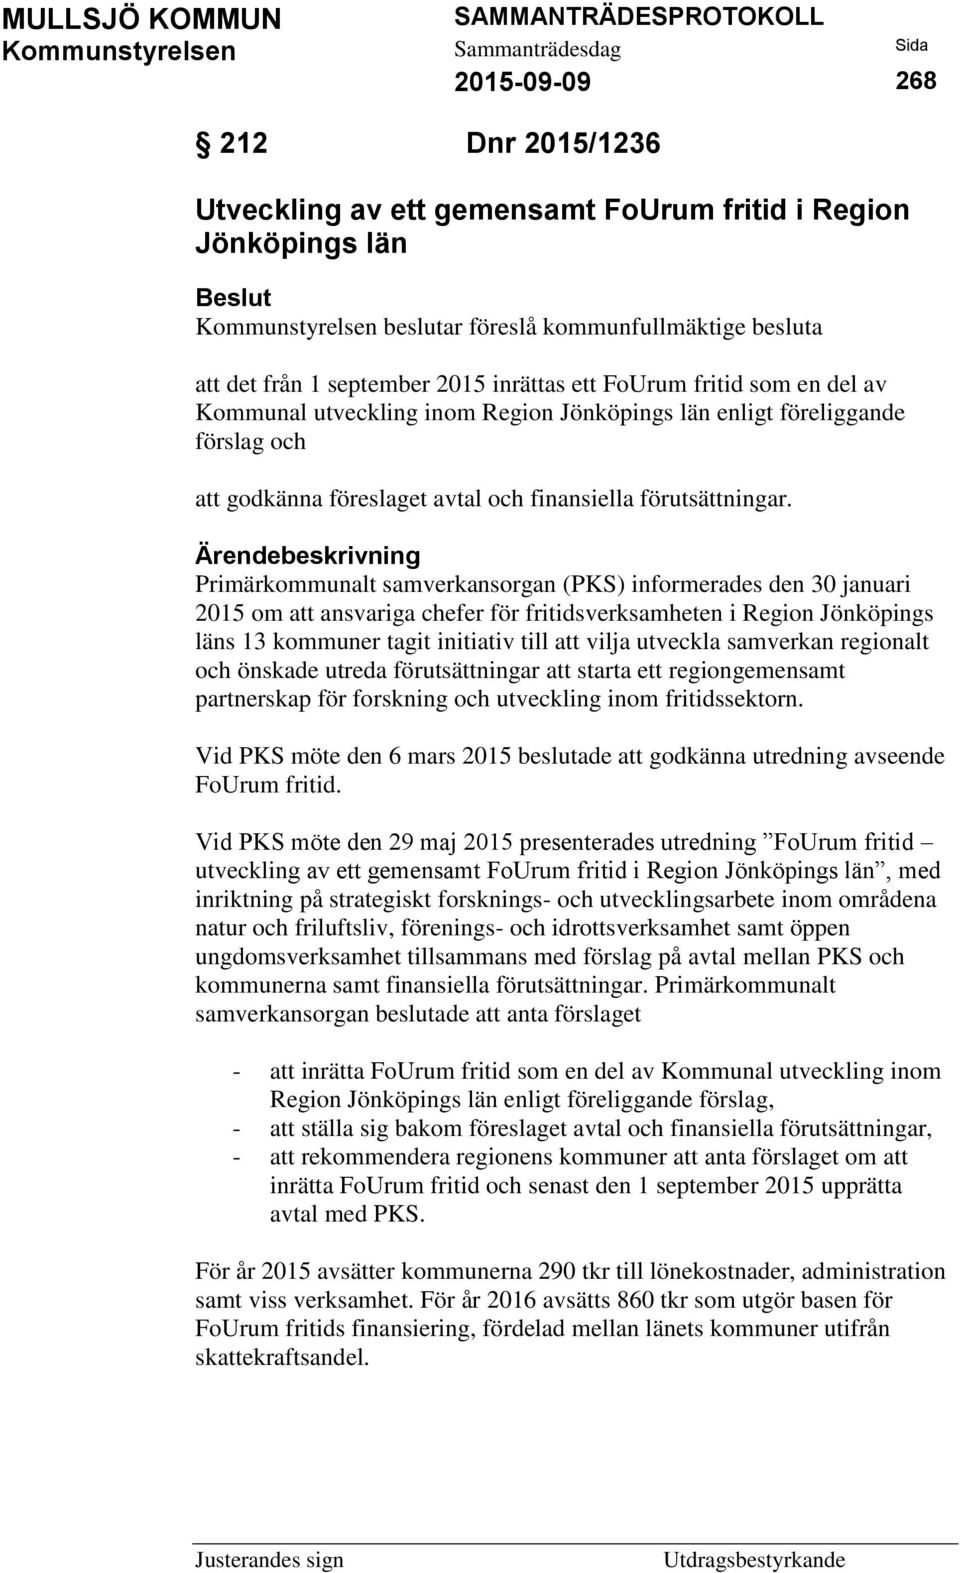 Primärkommunalt samverkansorgan (PKS) informerades den 30 januari 2015 om att ansvariga chefer för fritidsverksamheten i Region Jönköpings läns 13 kommuner tagit initiativ till att vilja utveckla